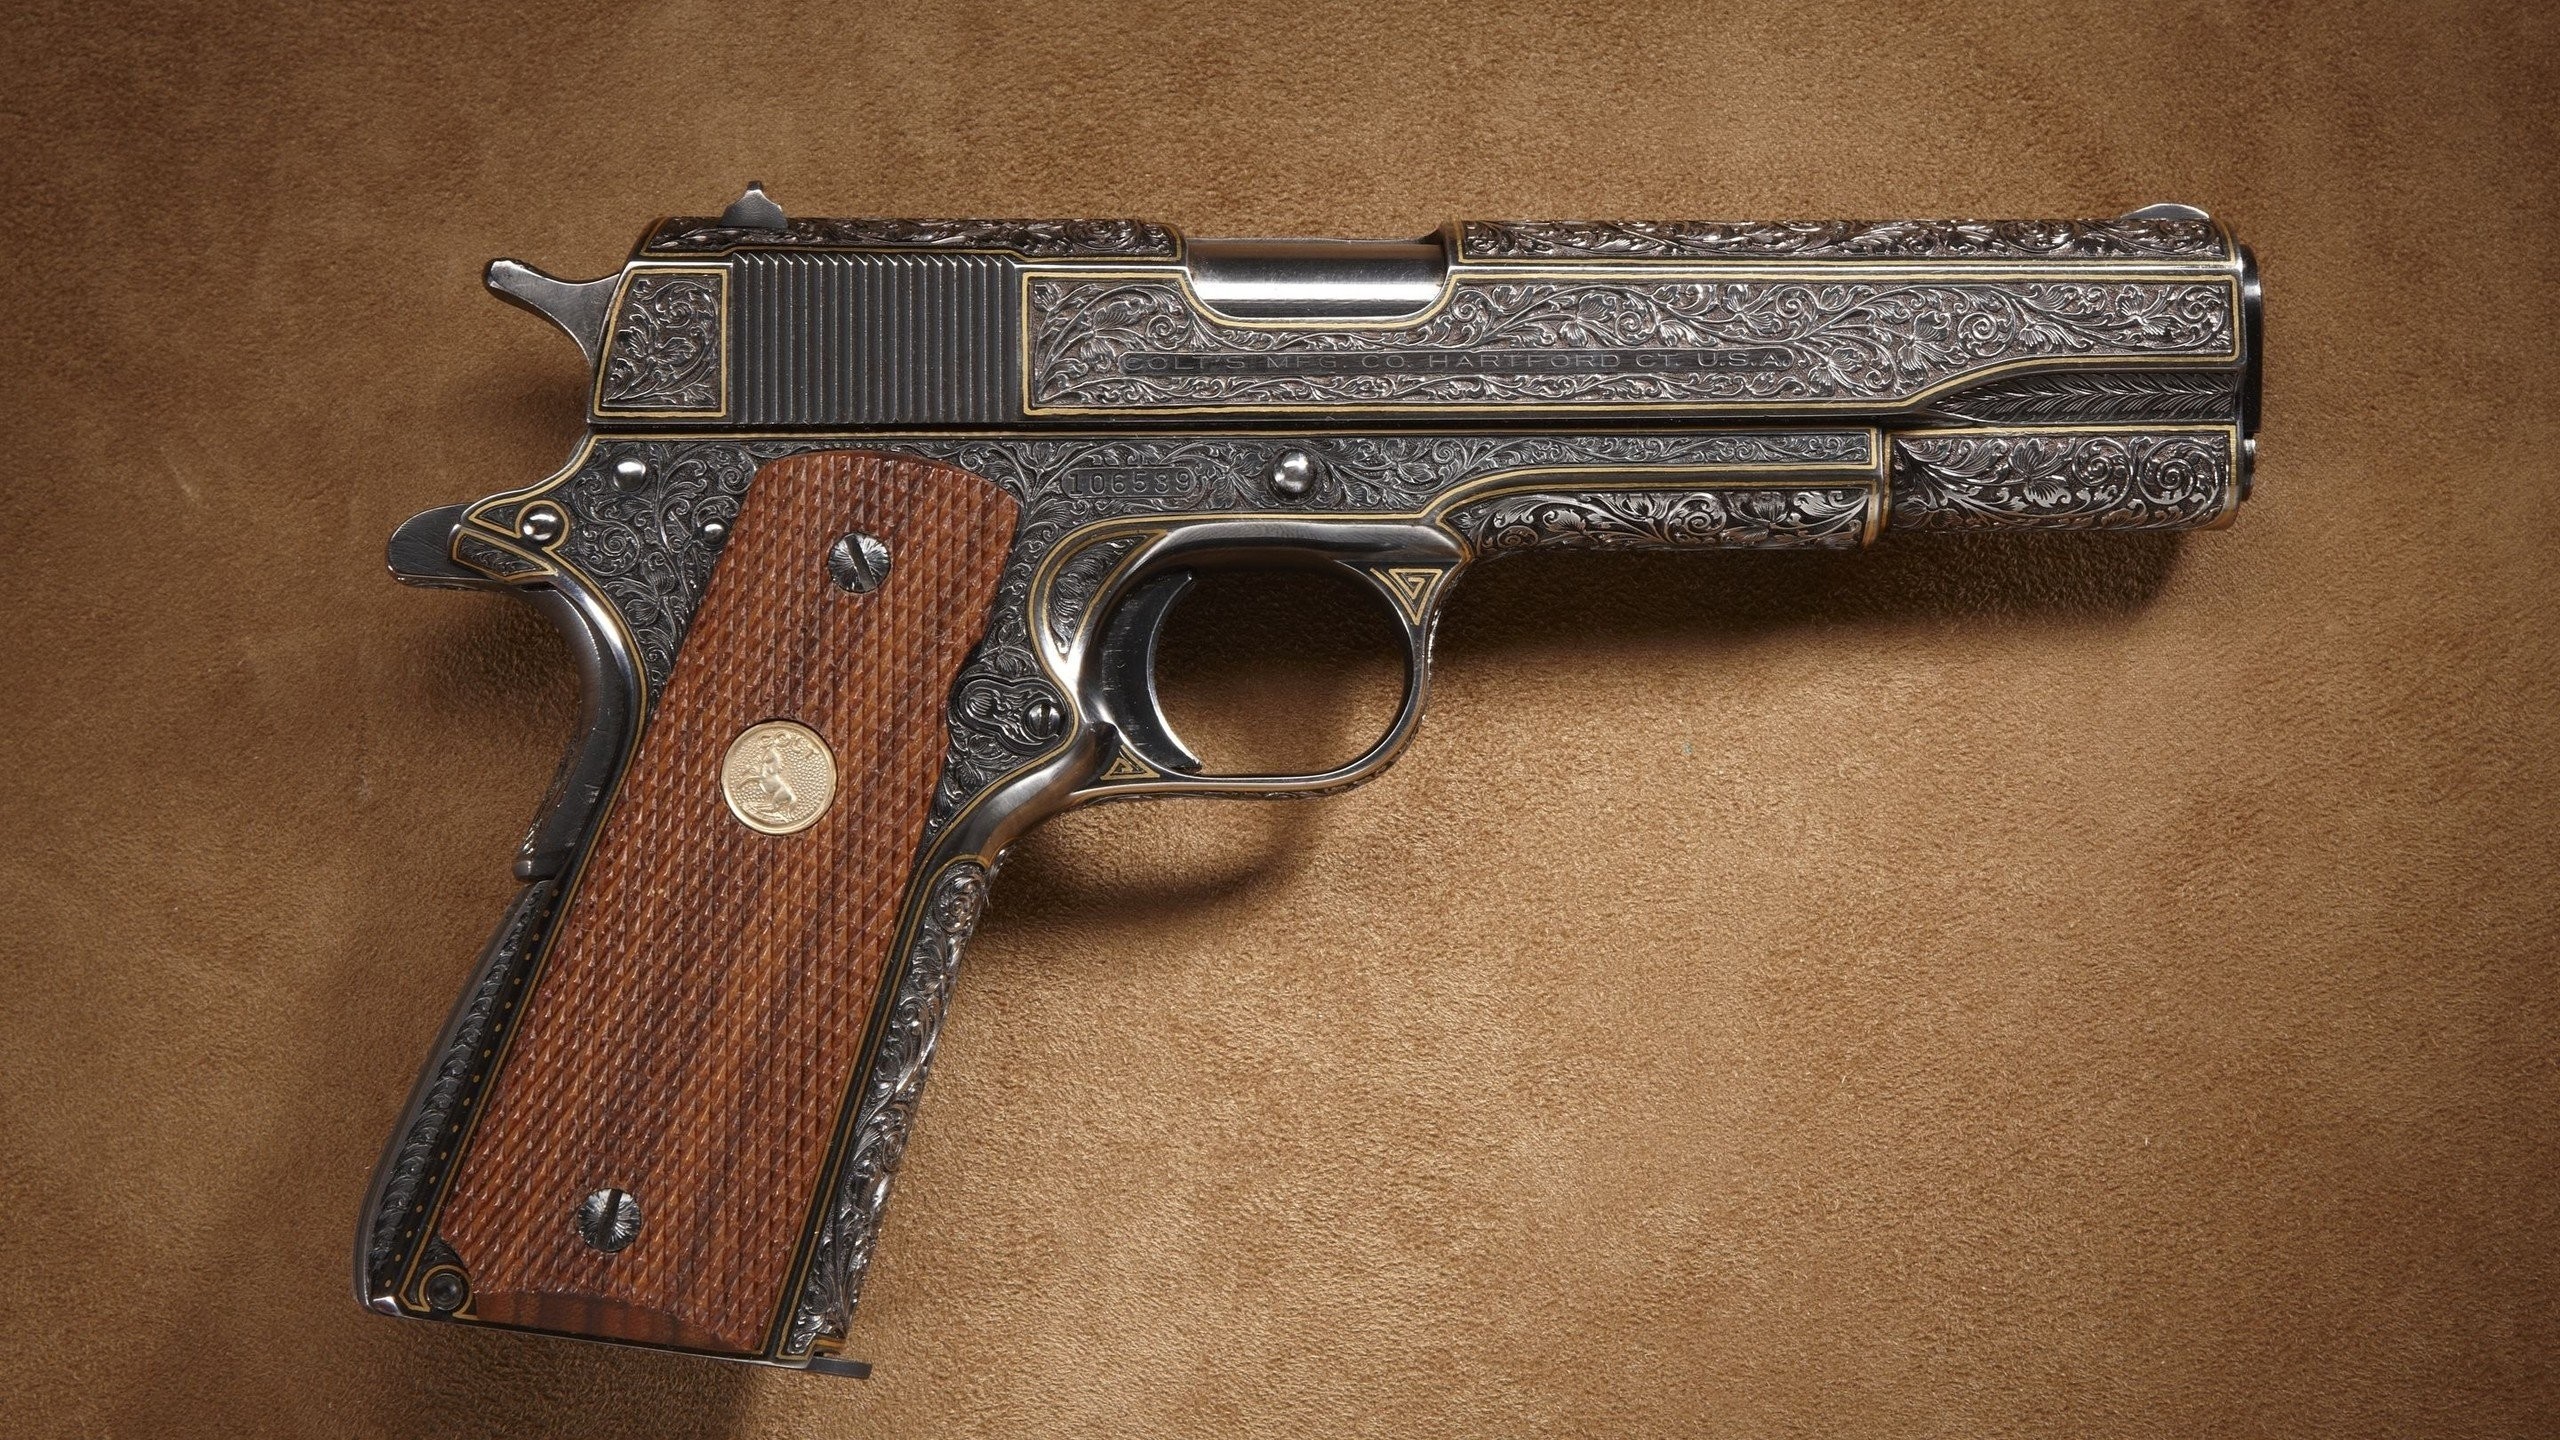 2560x1440 Weapons Guns Colt 1911